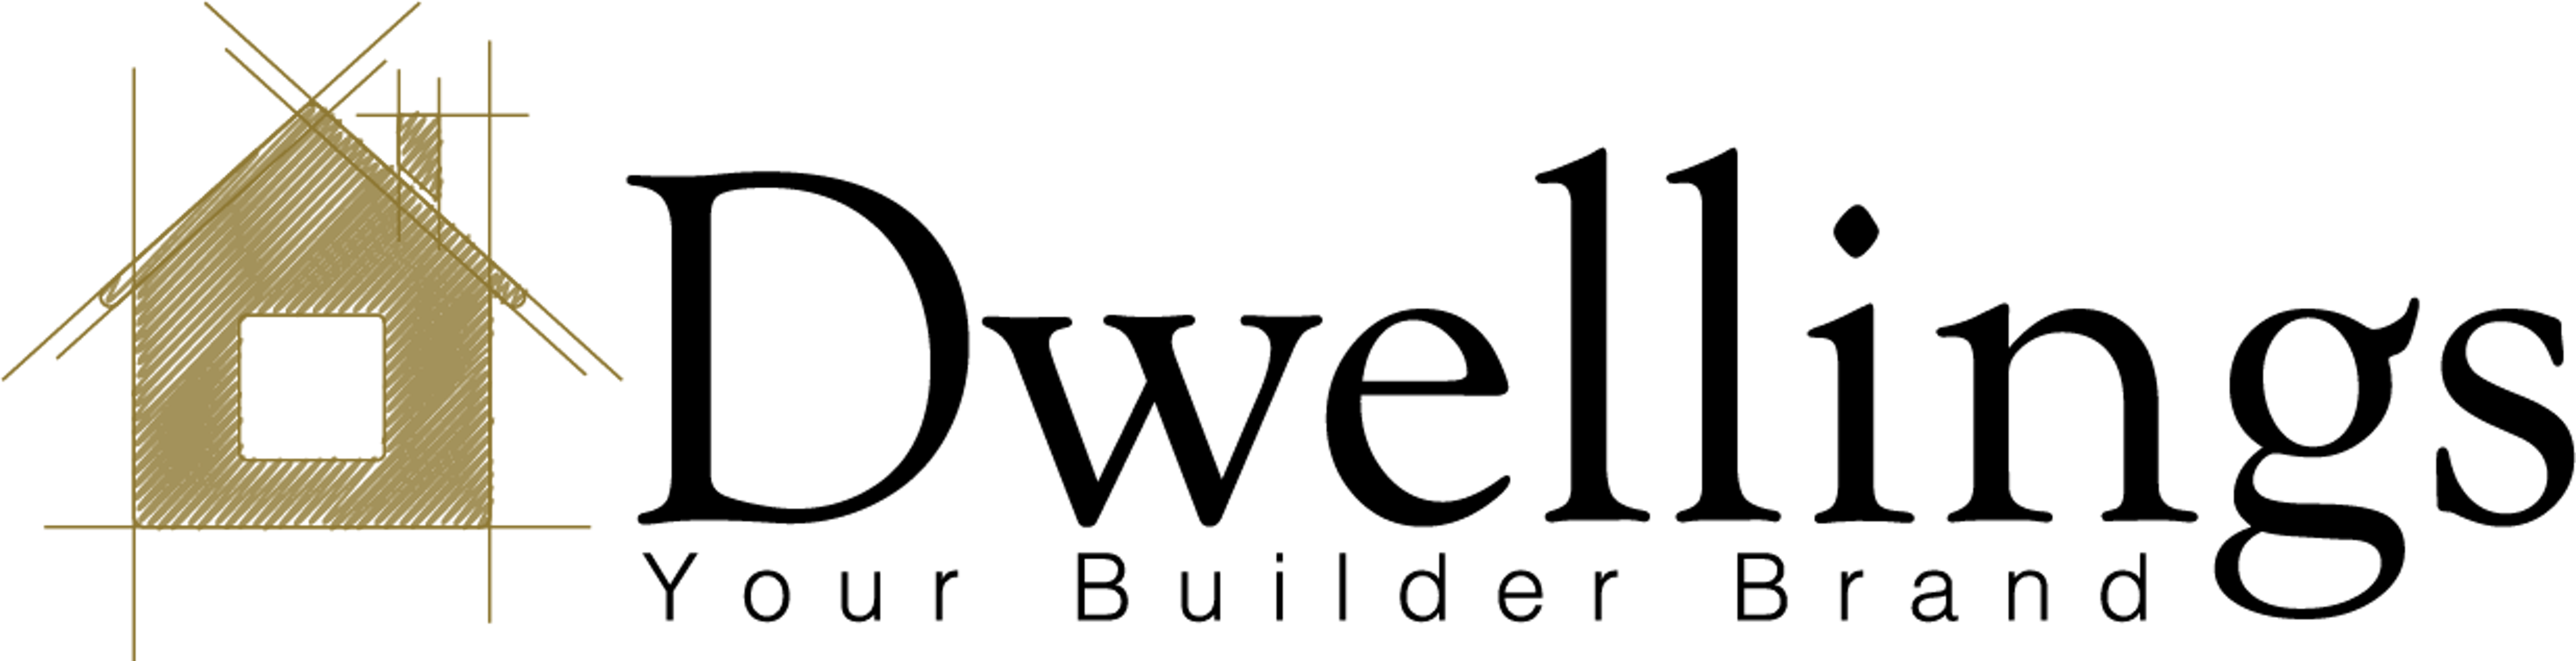 ef-dwellings-logo